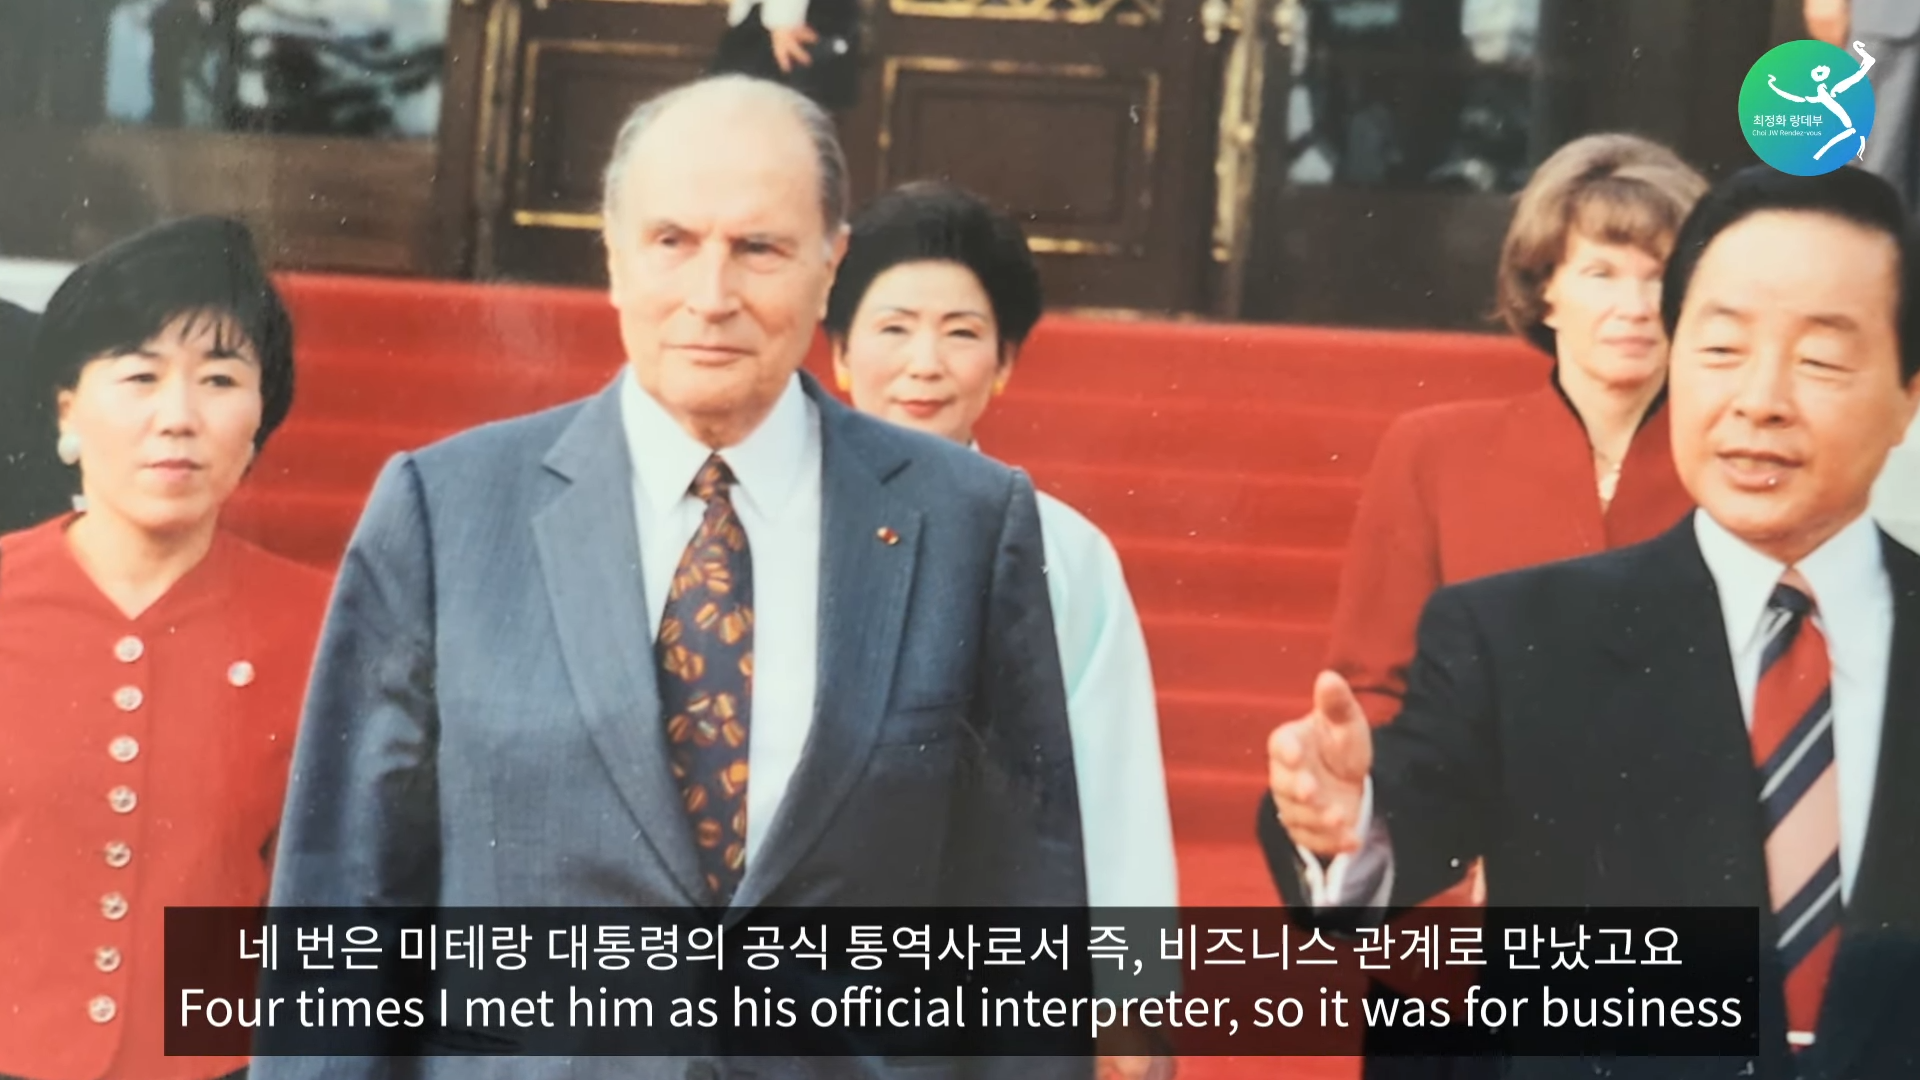 프랑스 대통령과 라붐의 소피마르소가 한국에서 만났을 때 일어난 일_ 엘리제궁에서 독대했을 때 나눈 이야기_ 0-49 screenshot.png